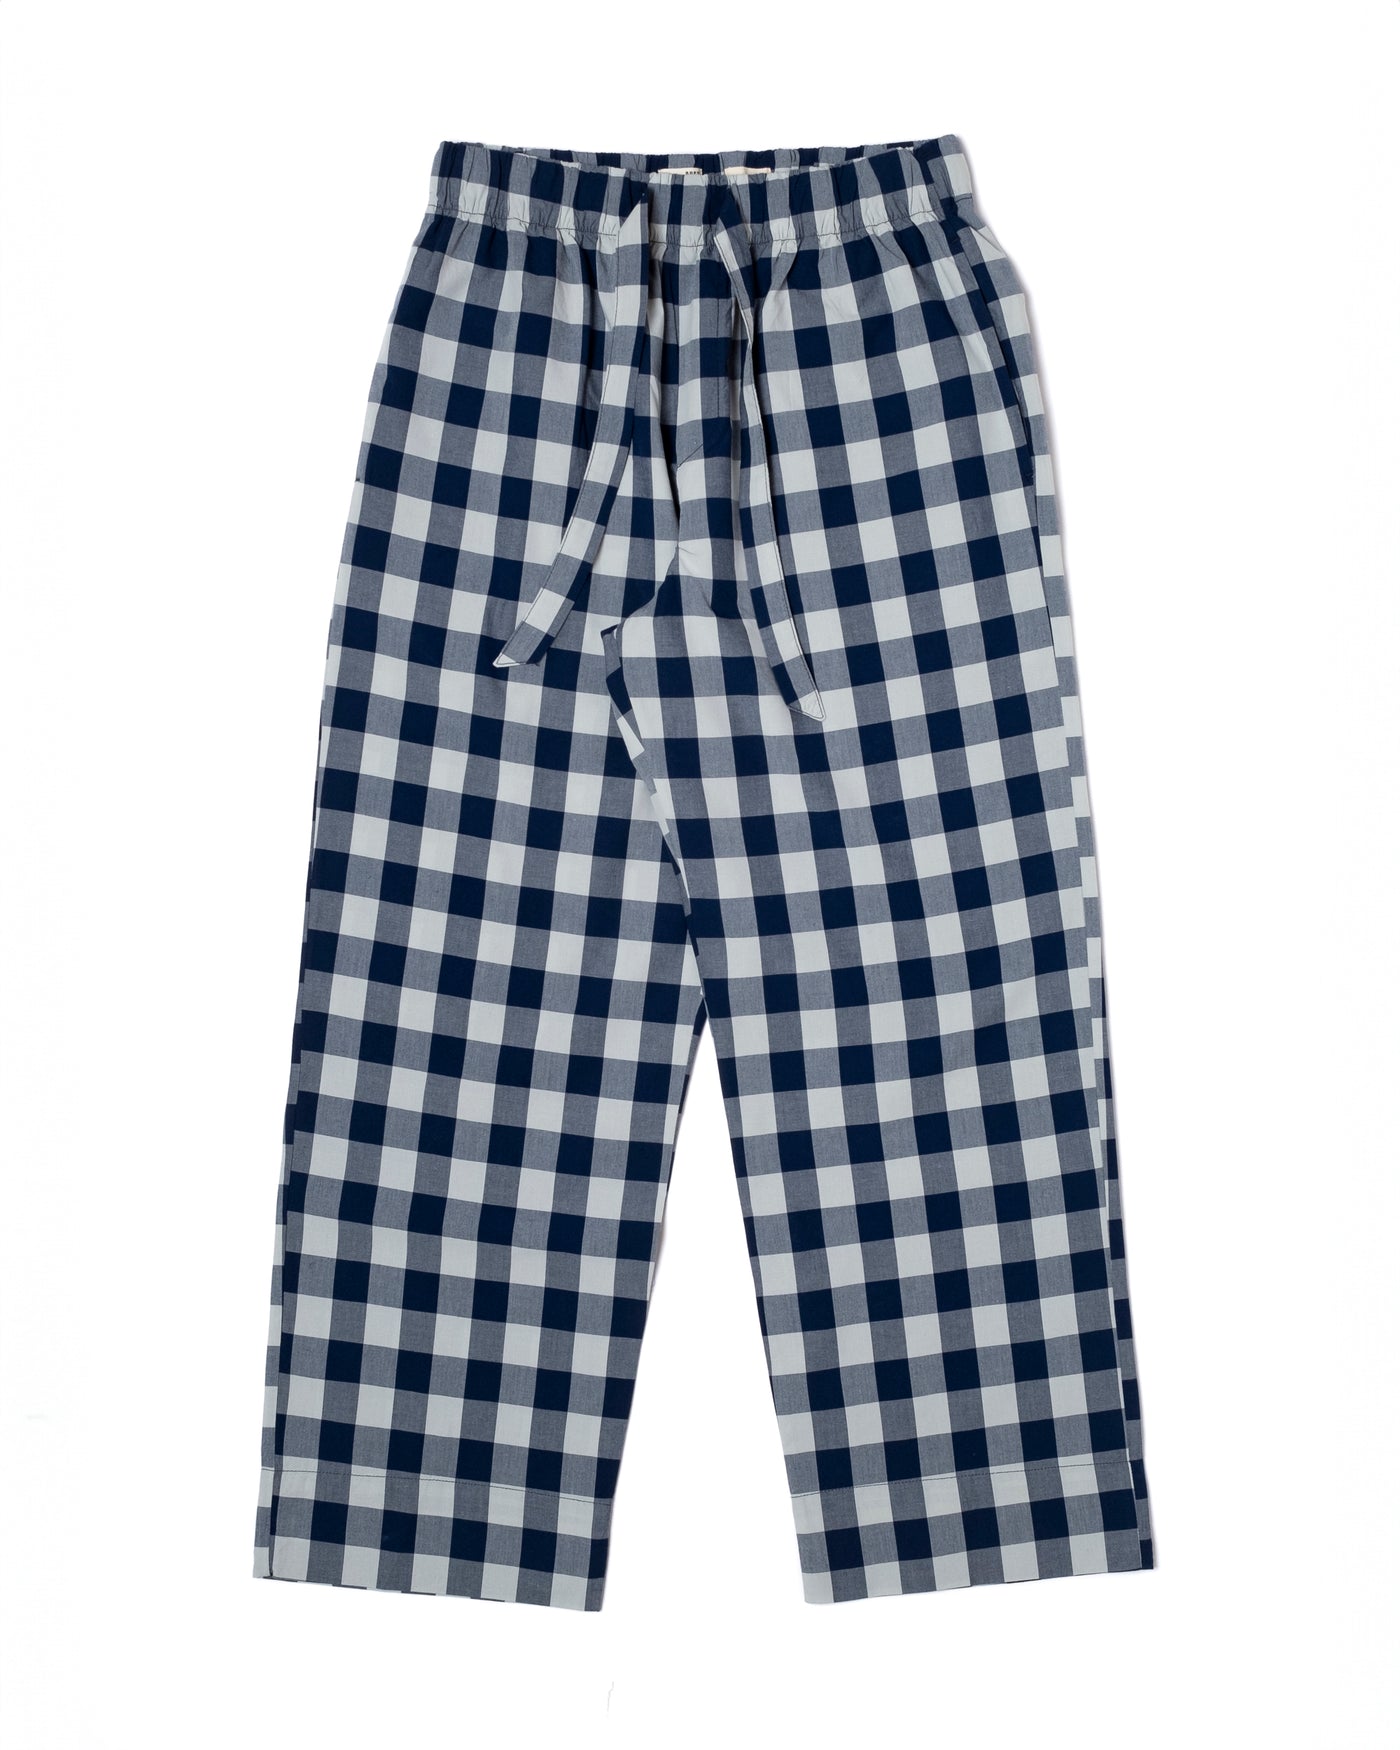 Pyjama Indigo Check Blue